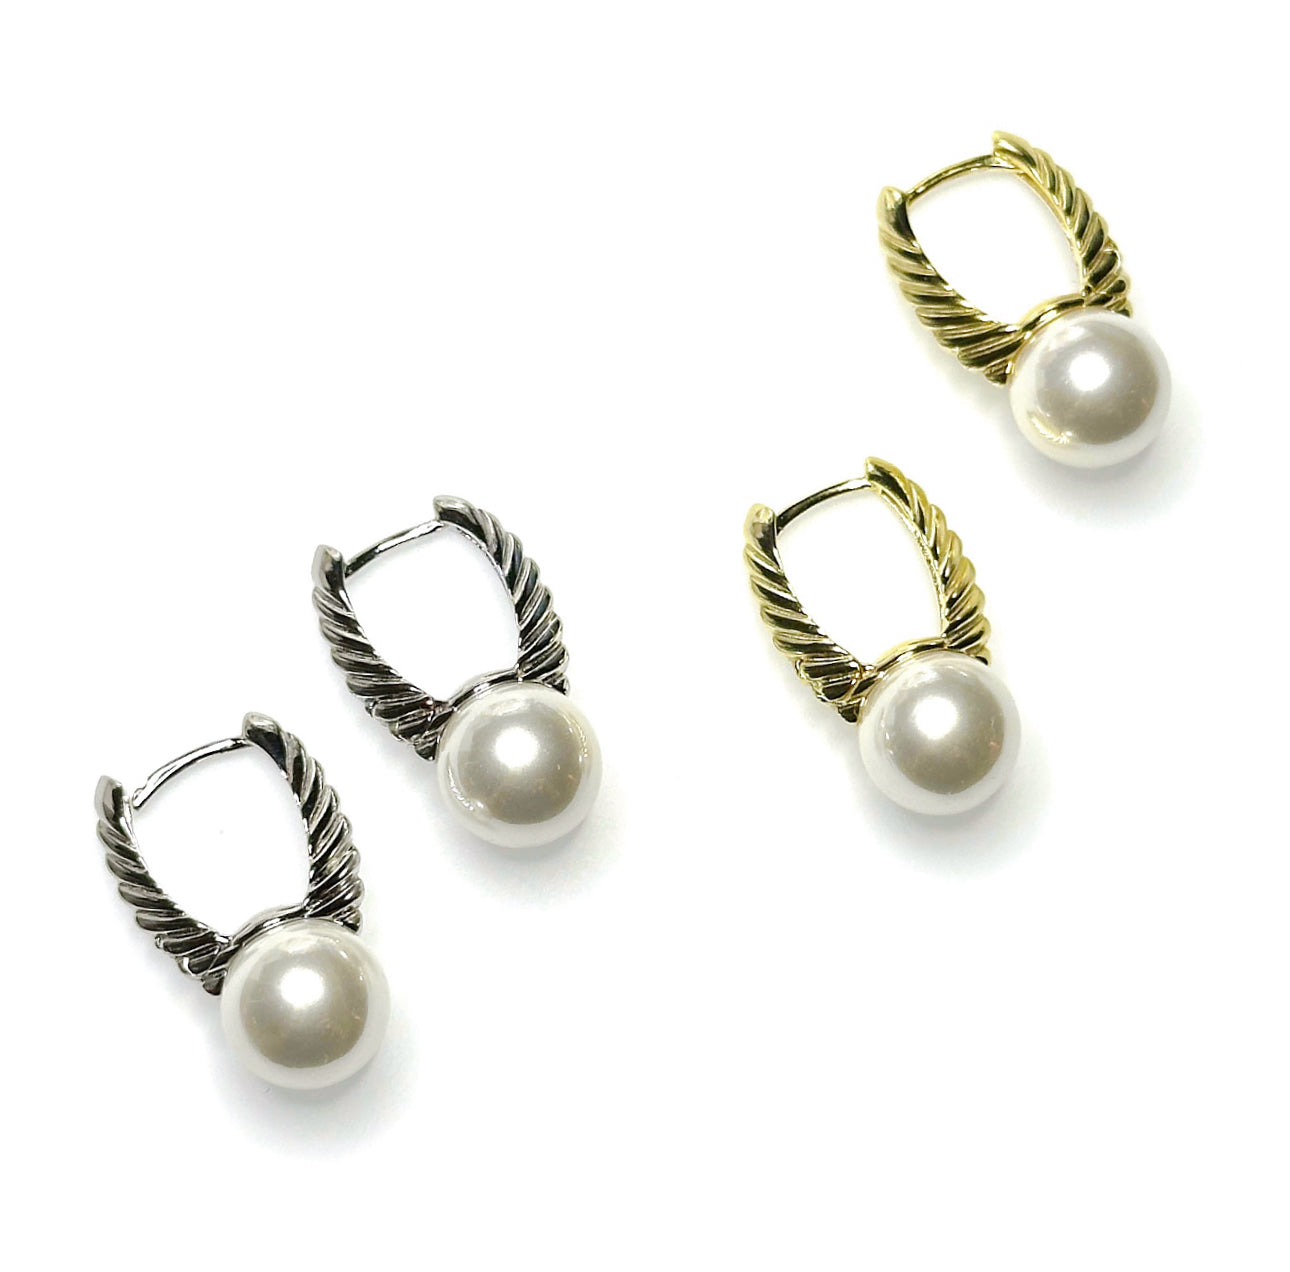 Winged pearl earrings